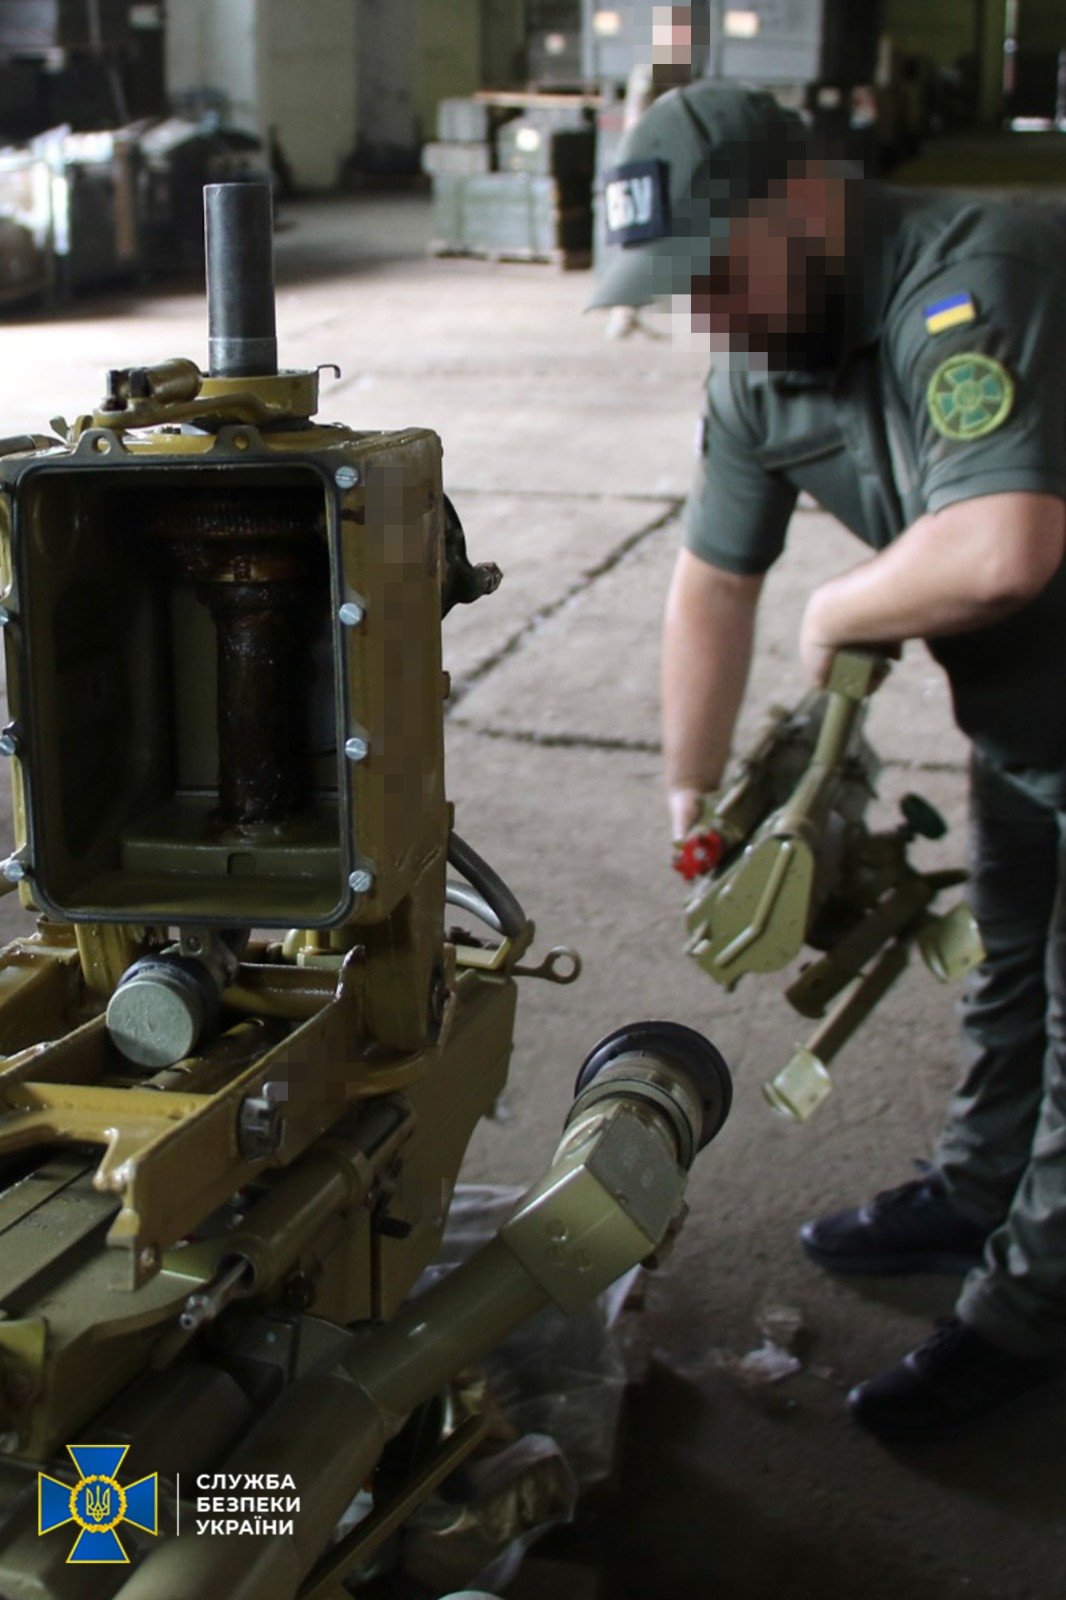 СБУ виявила цілий арсенал запчастин для важкого озброєння на нелегальних складах під Києвом 2